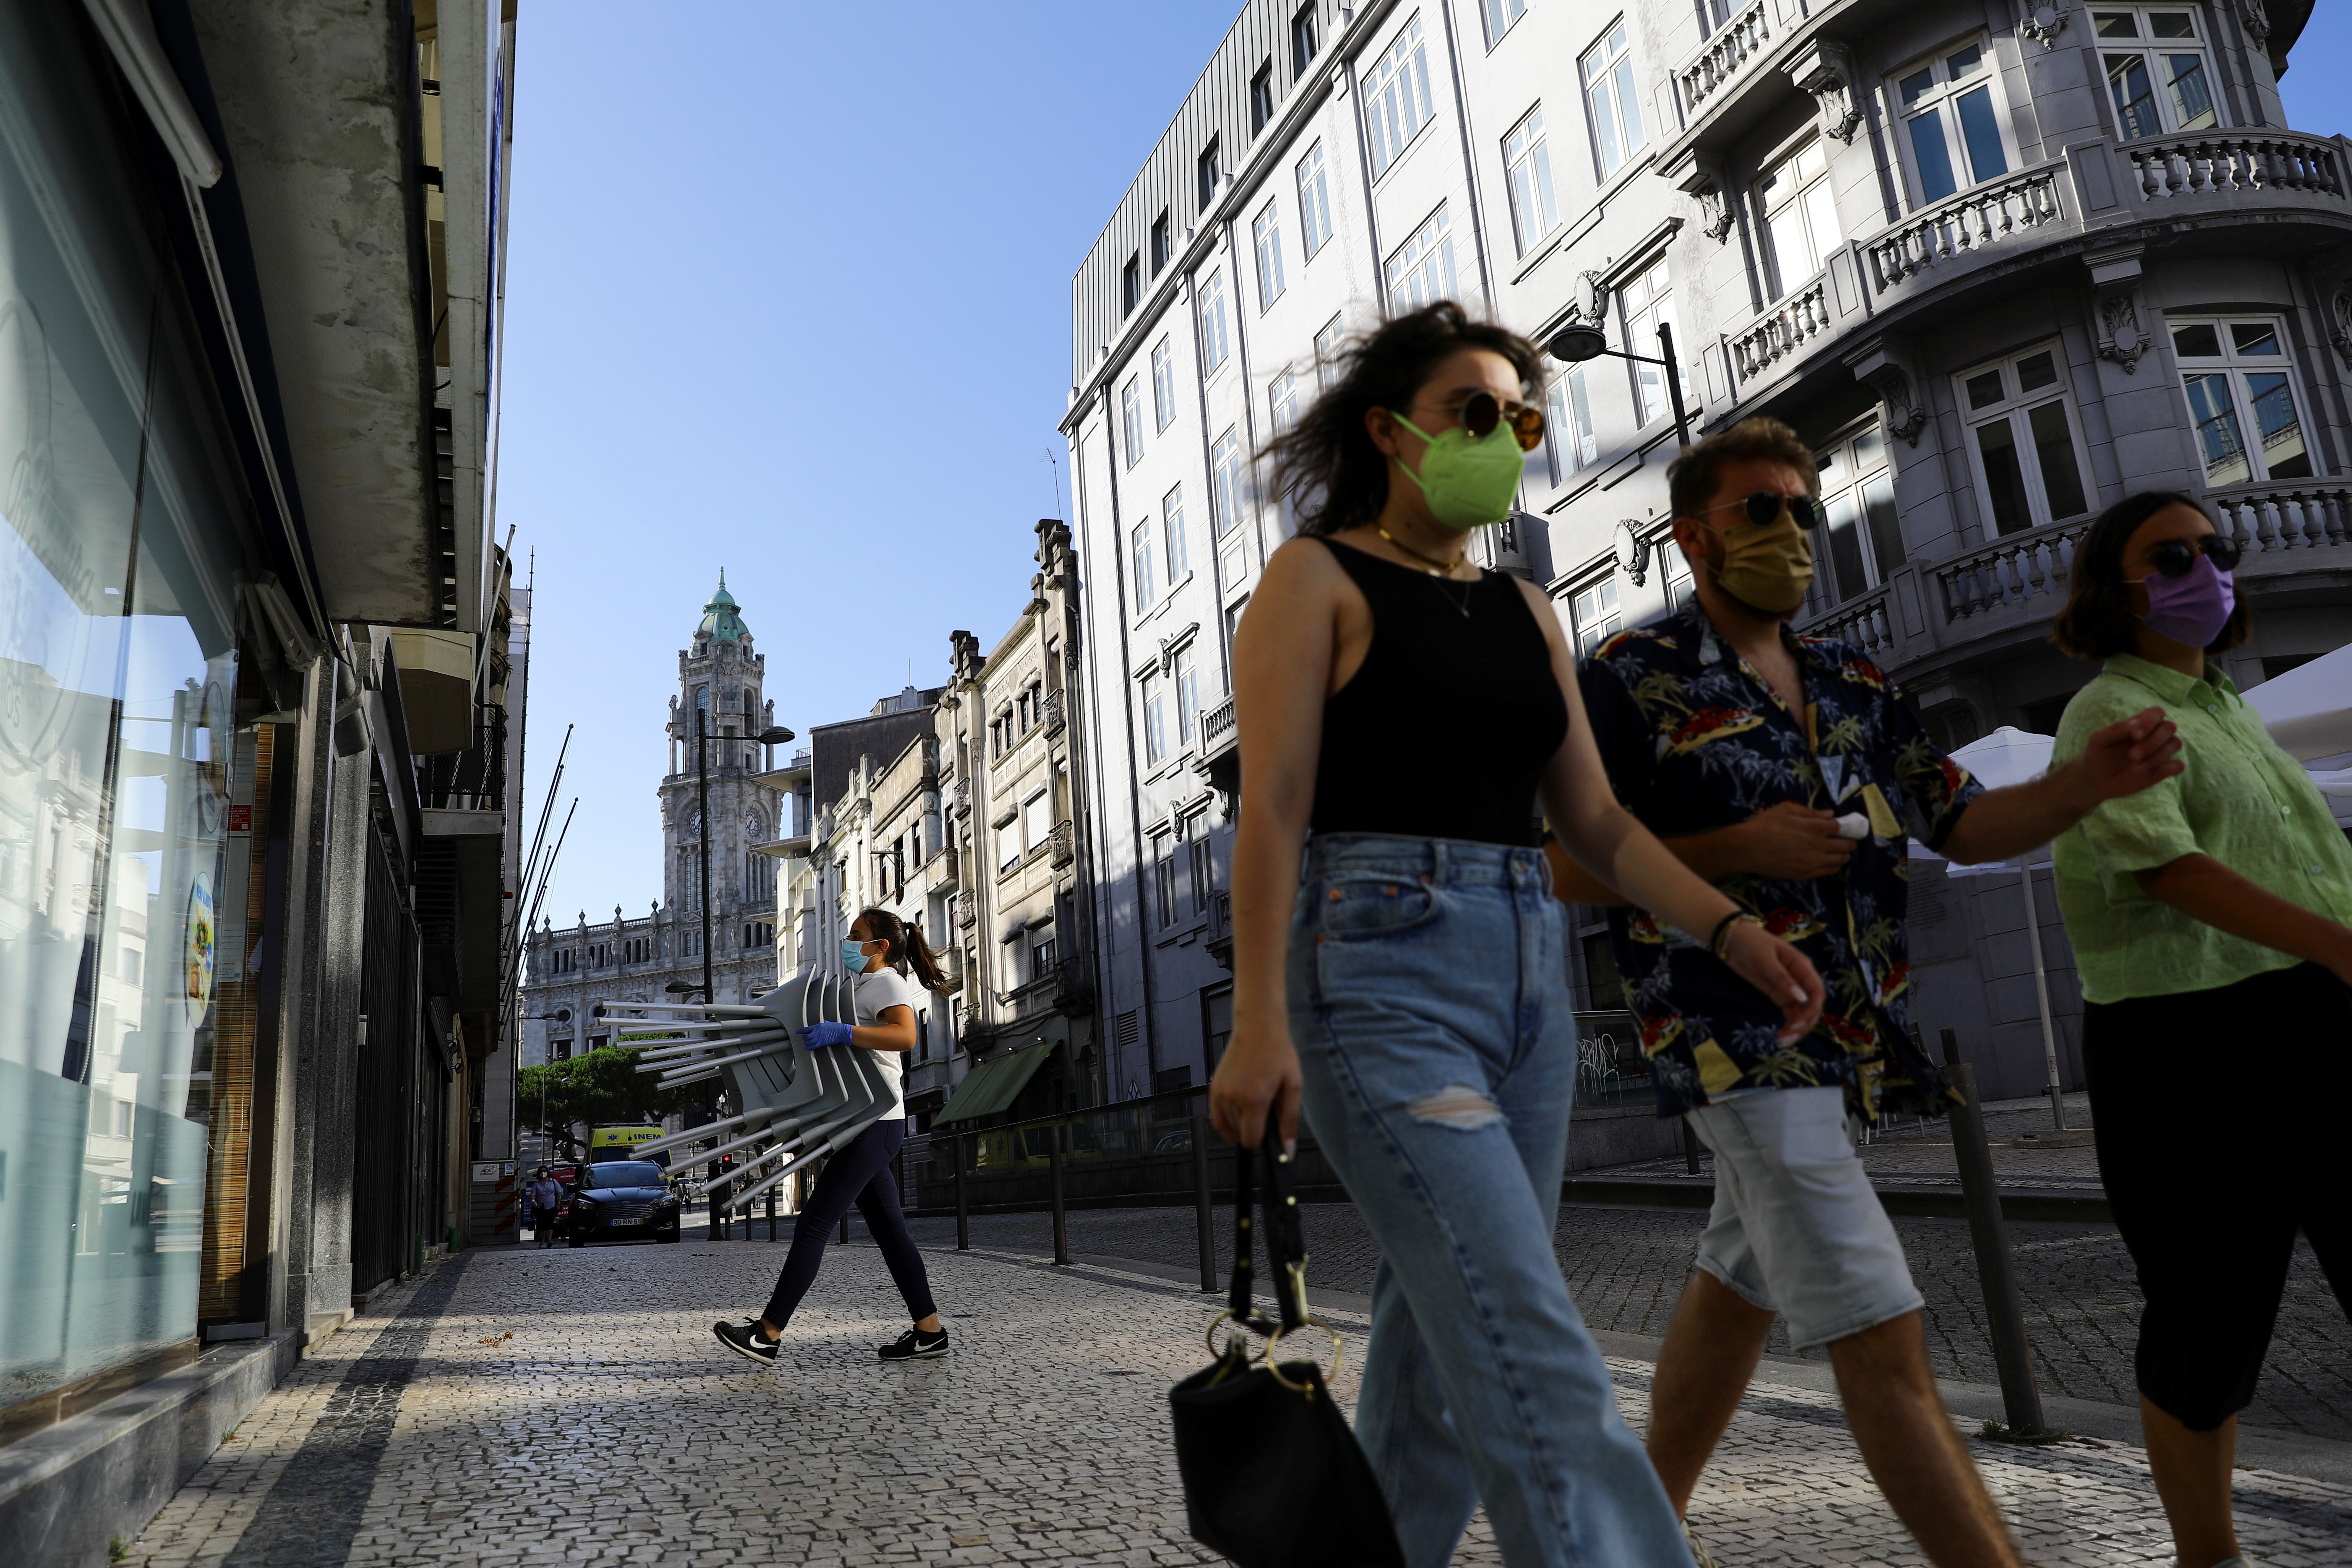 Funcionária transporta cadeiras e pedestres caminham em calçada do Porto